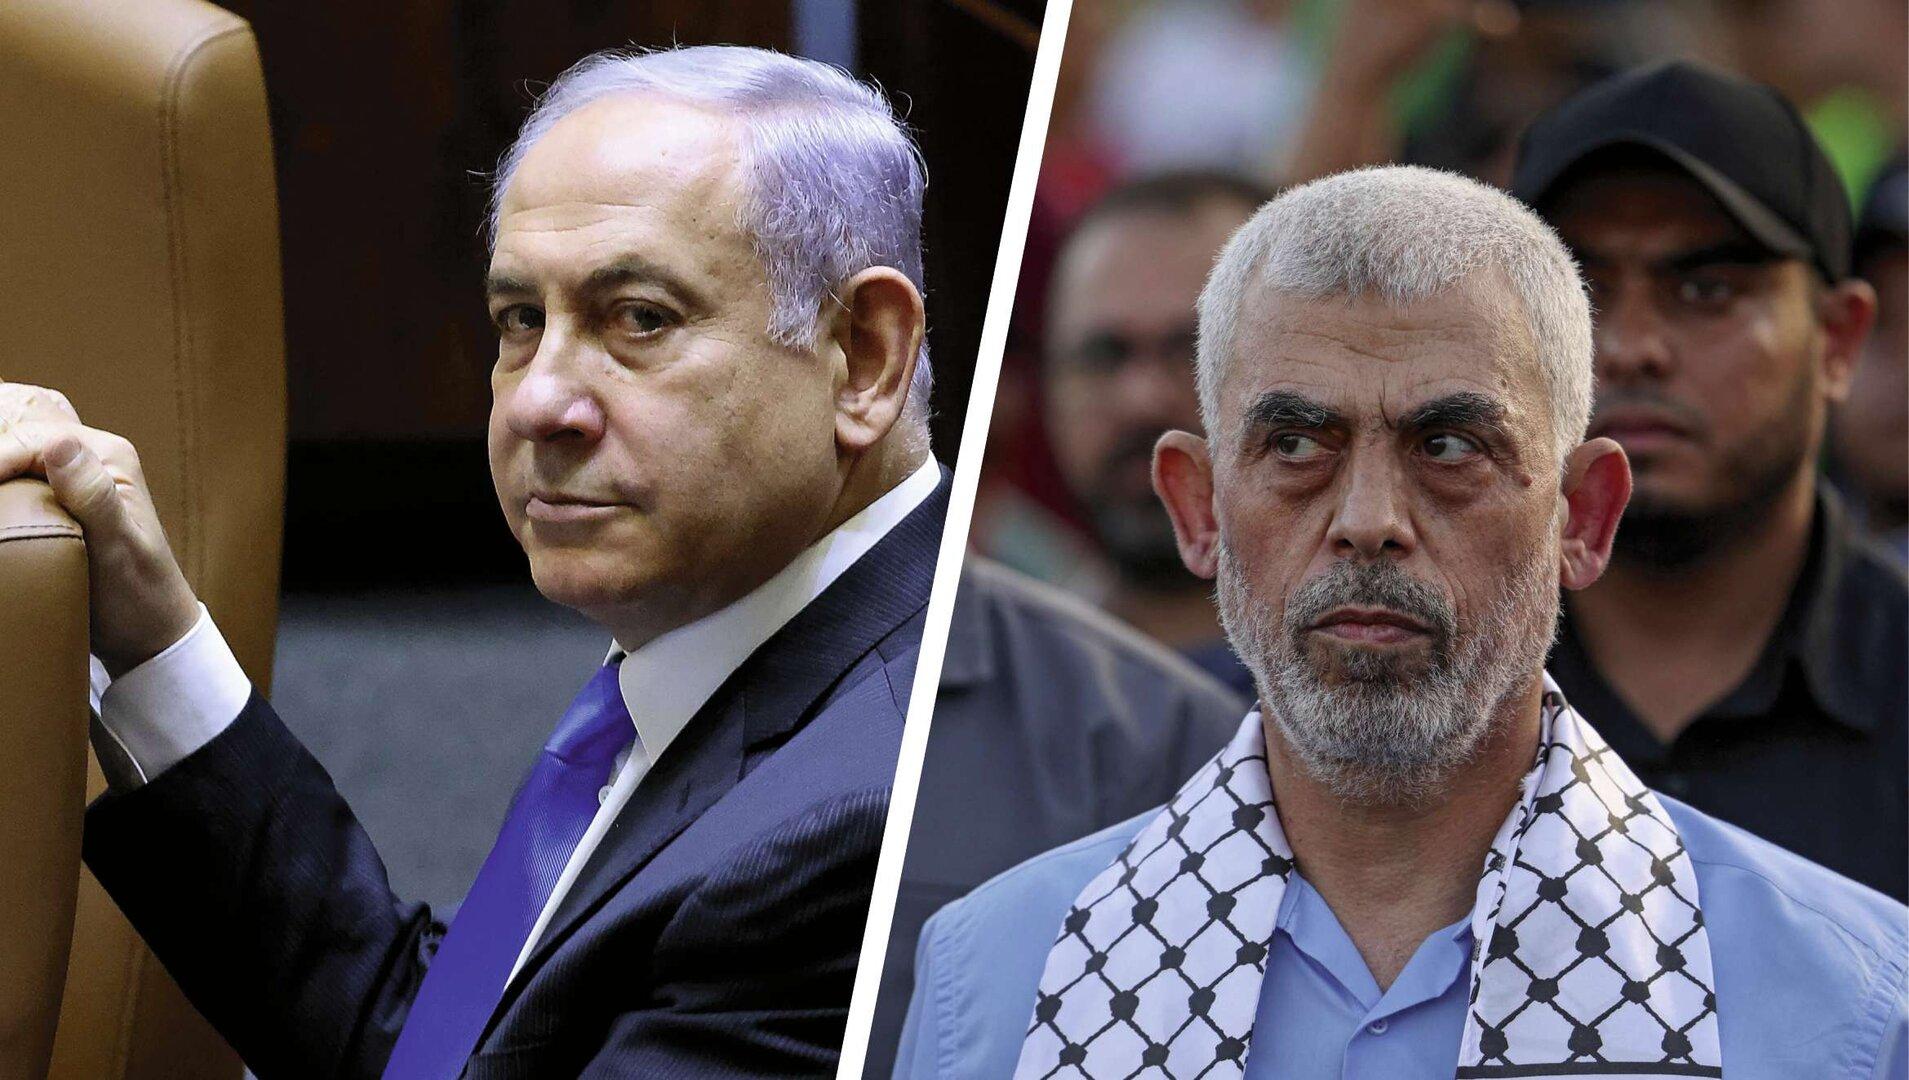 Kriegsverbrechen: Haftbefehl gegen Israel-Premier Netanjahu und Hamas-Chef